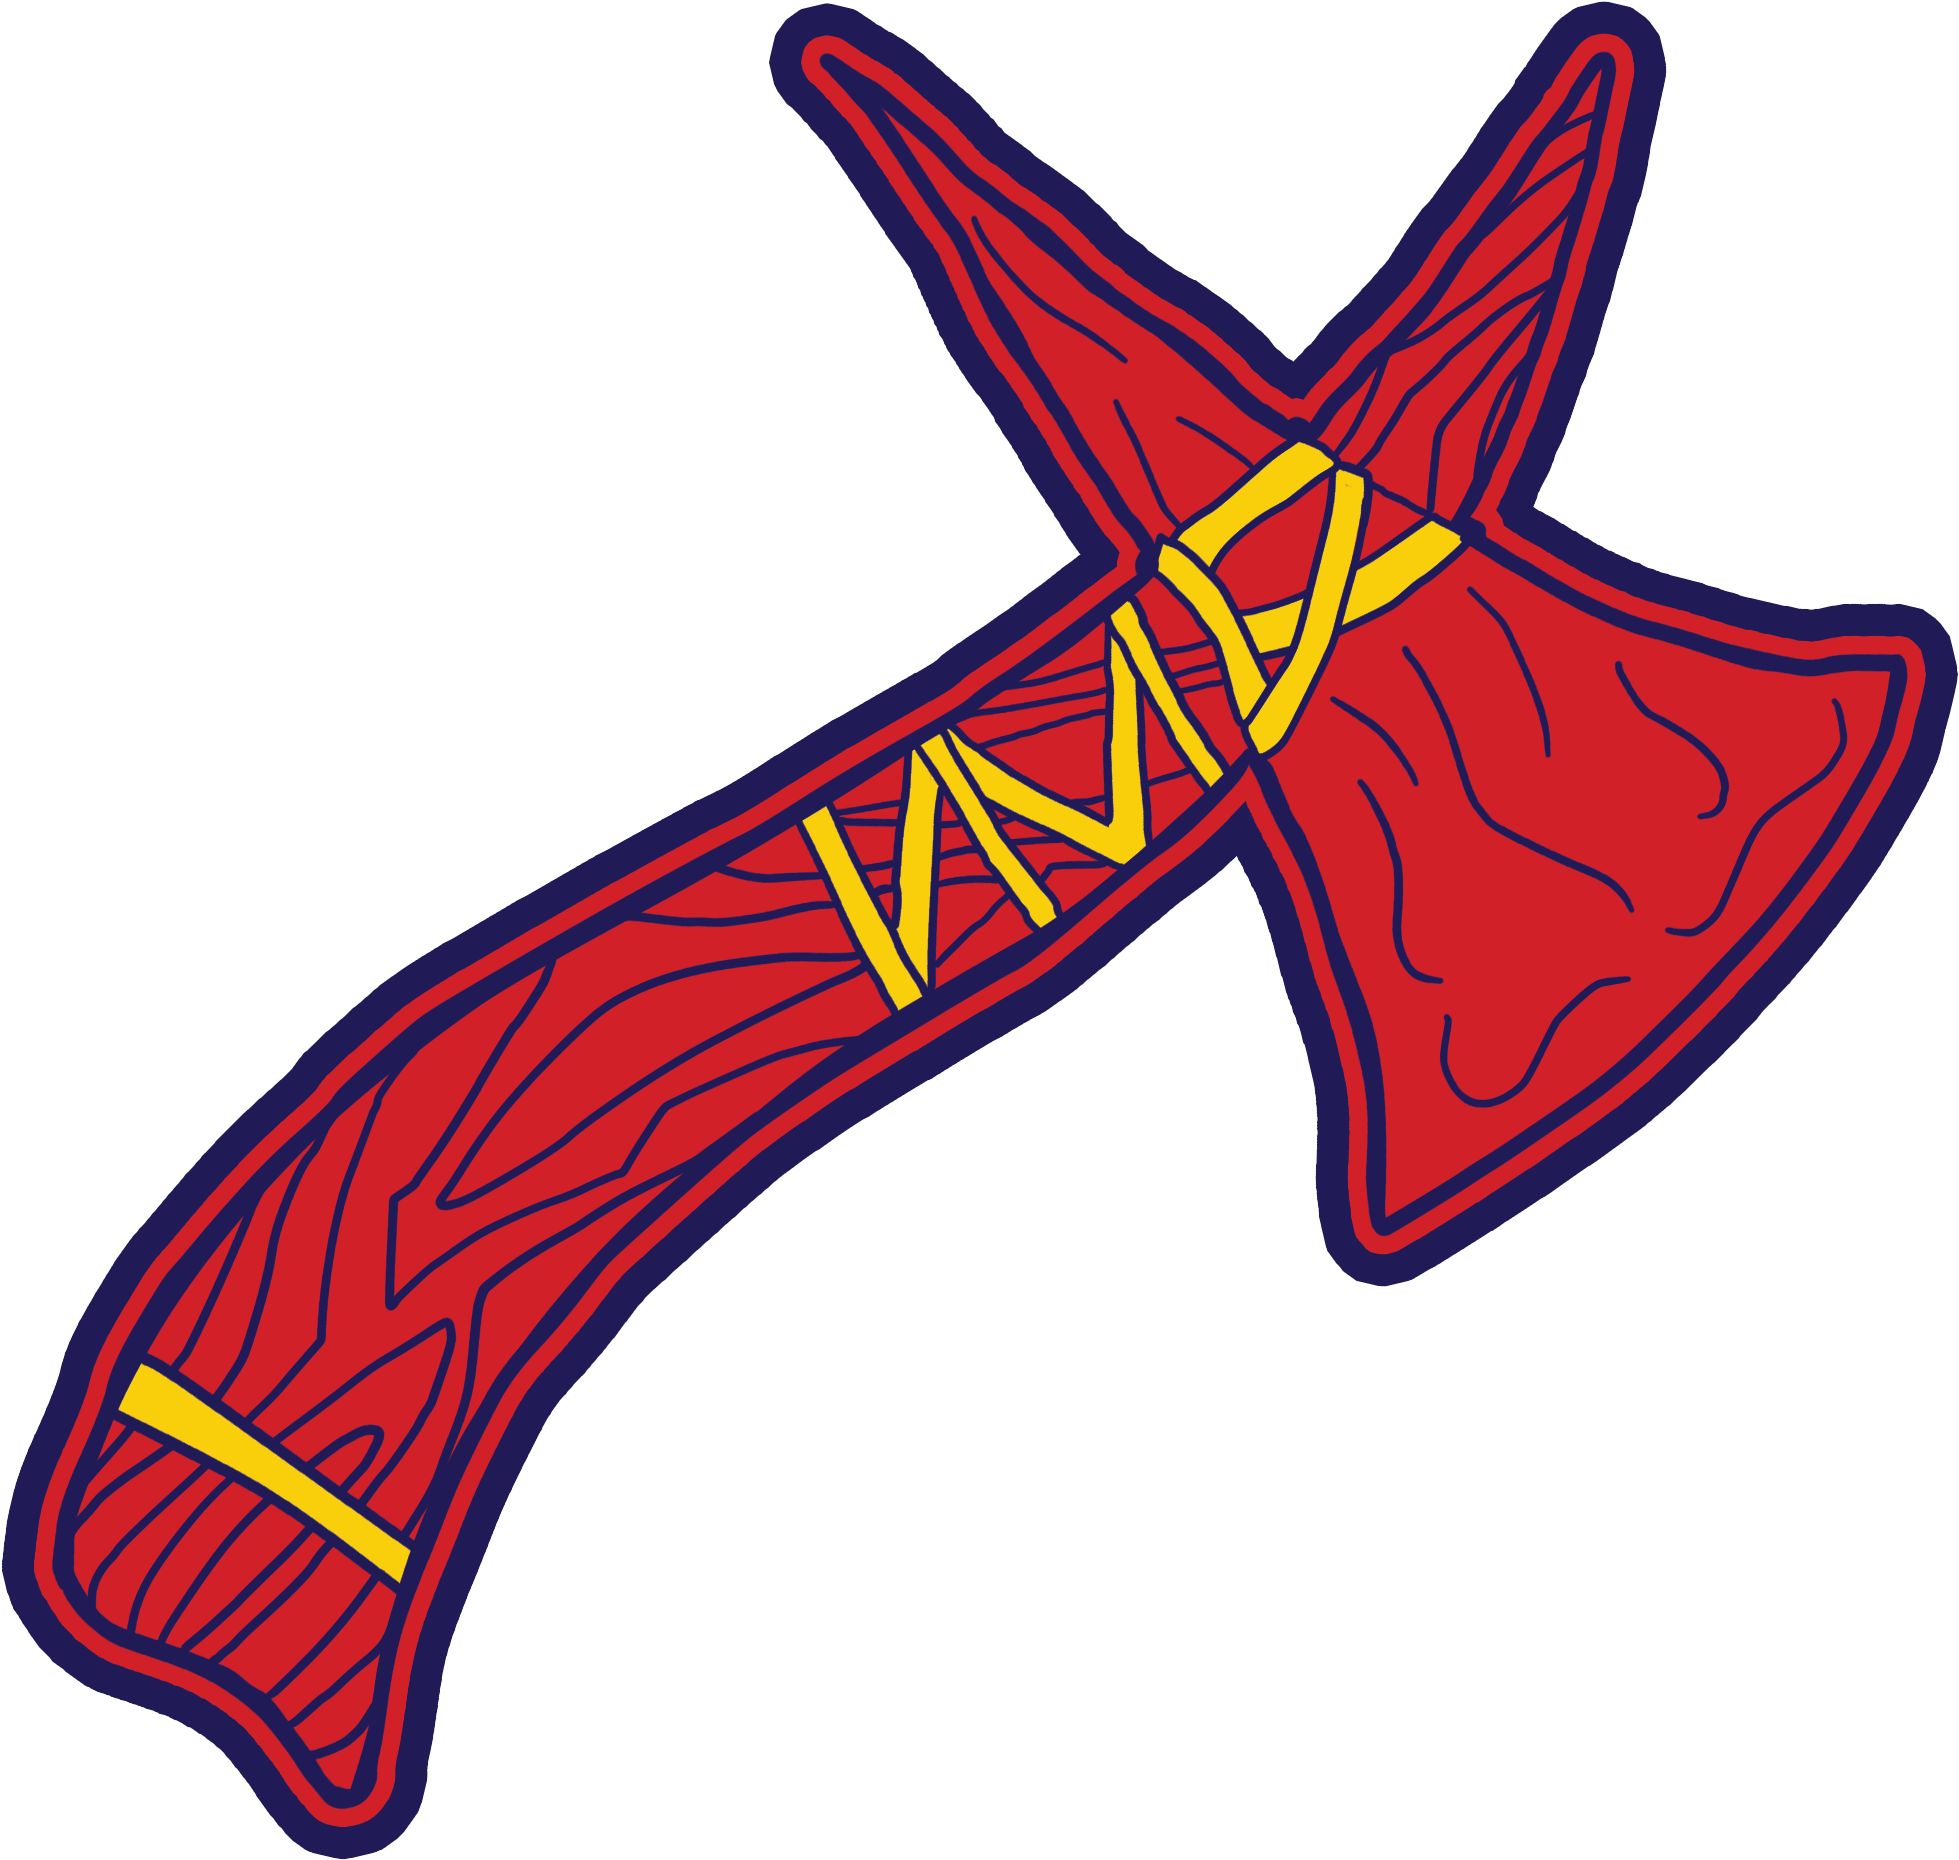 Braves logo Image Transparente